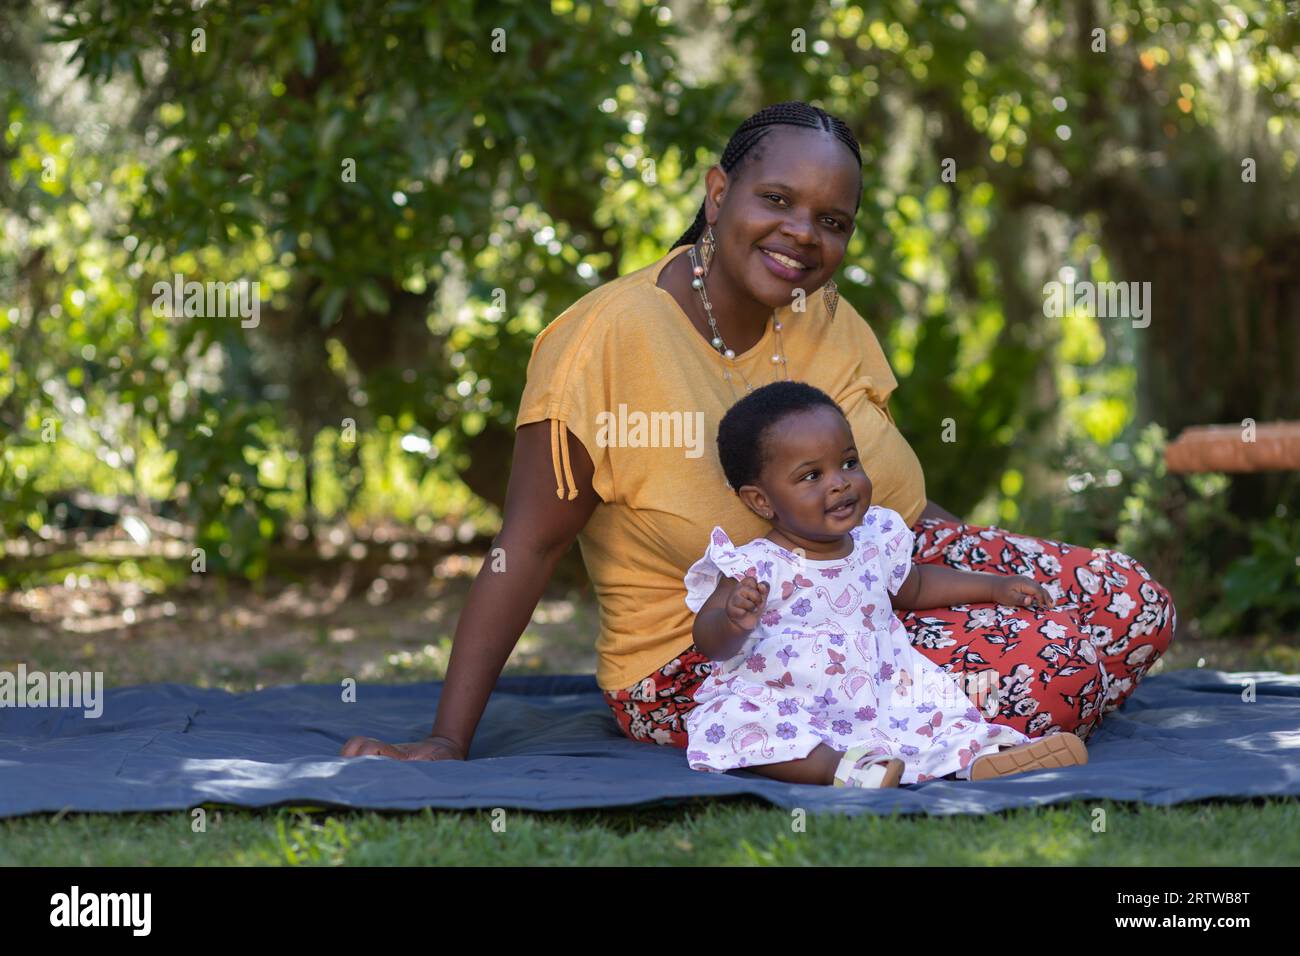 Portrait d'une jeune femme noire assise sur une couverture de pique-nique à l'extérieur sous quelques arbres avec sa petite fille Banque D'Images